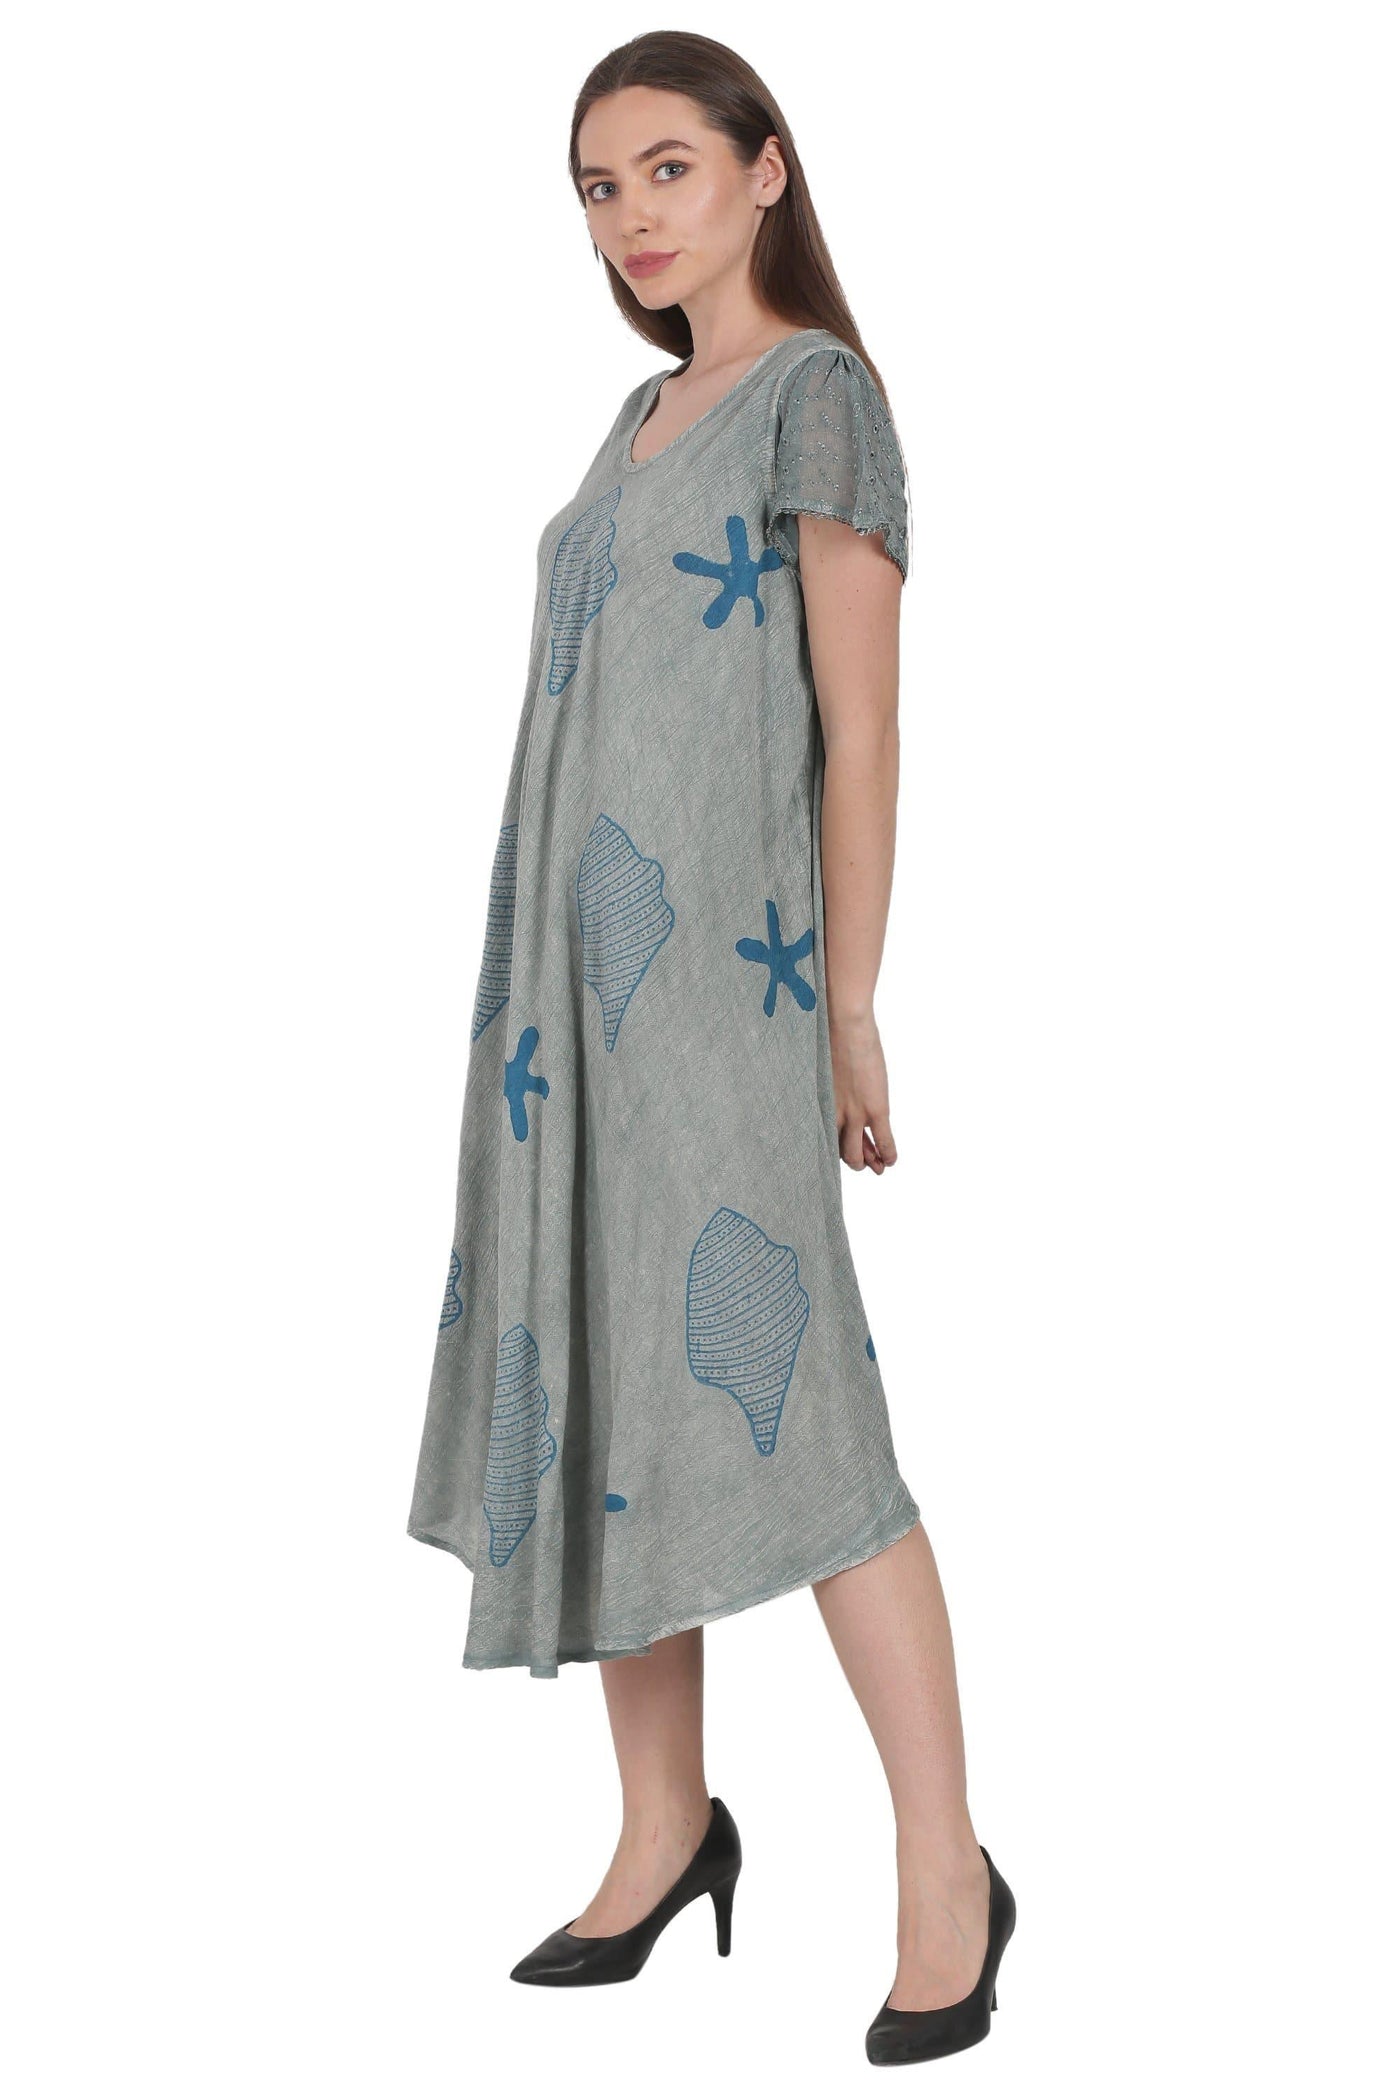 Seashells & Starfish Block Print Trapeze Dress UDS52-2437  - Advance Apparels Inc